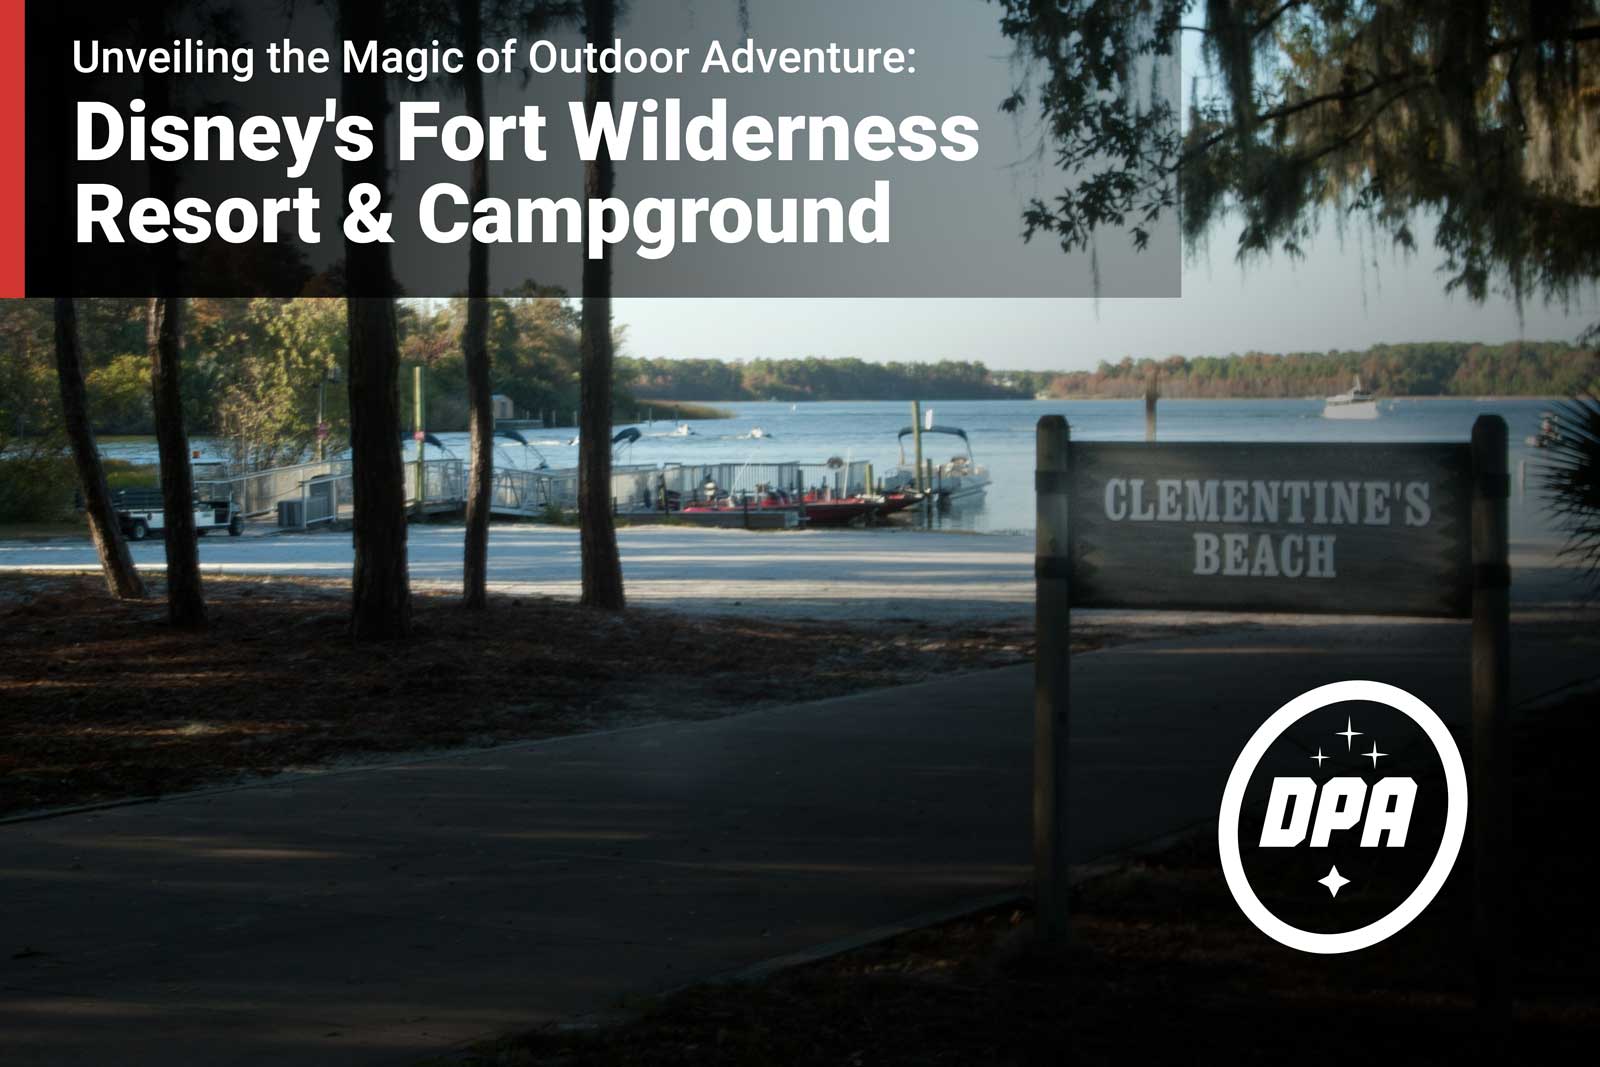 Disney's Fort Wilderness Resort & Campground